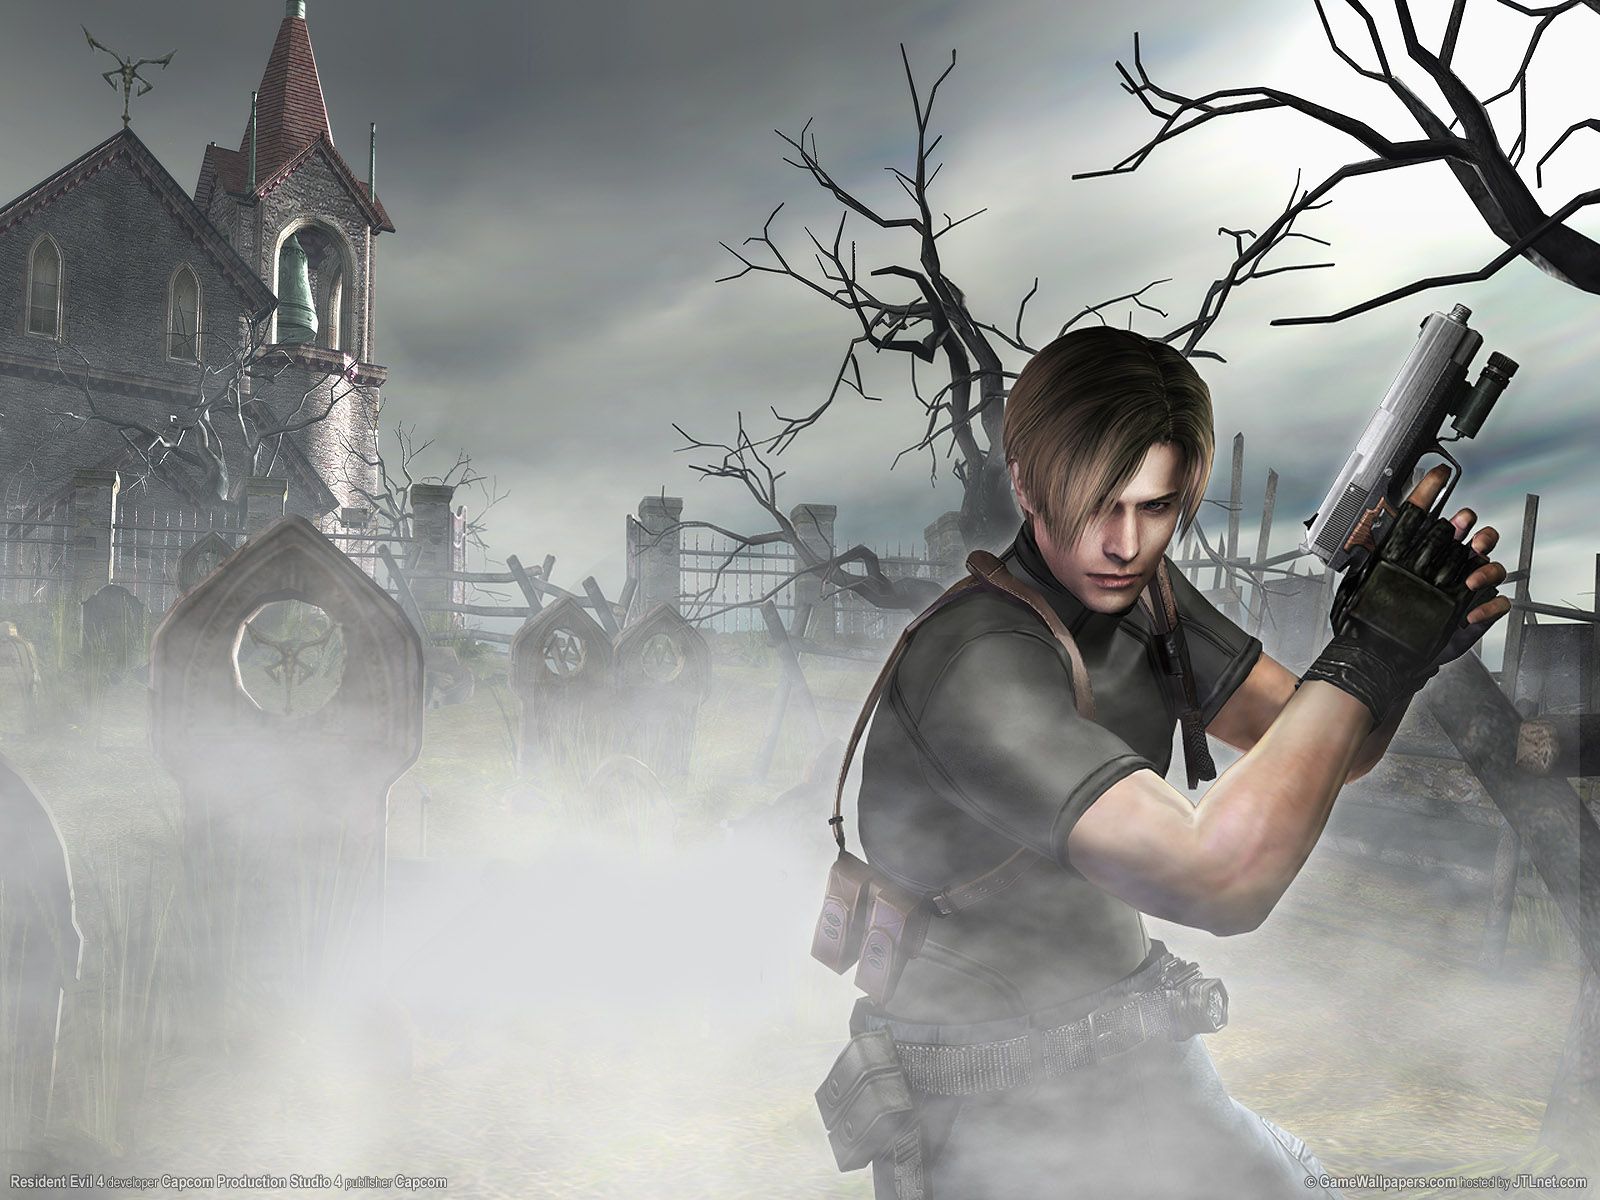 Resident Evil 4 wallpapers Resident Evil 4 stock photos